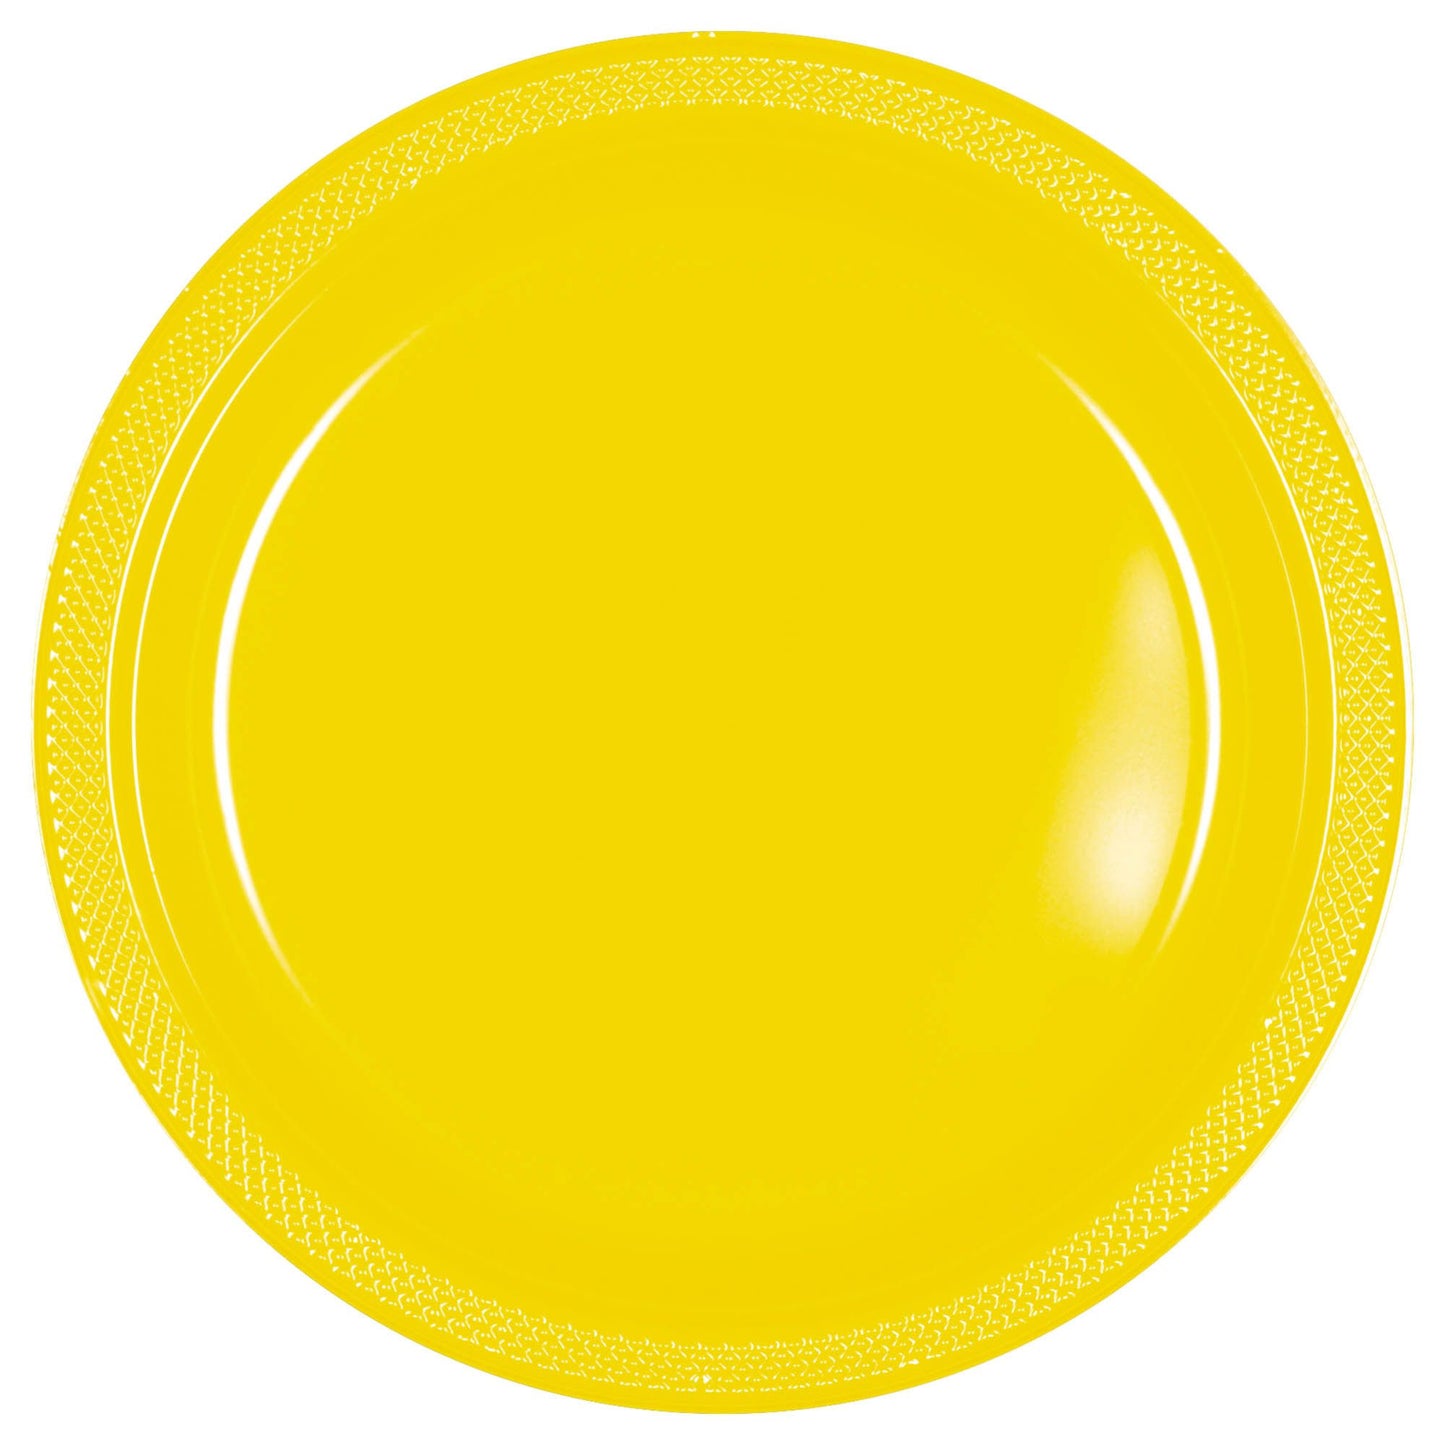 10" Plastic Plates (20ct.):